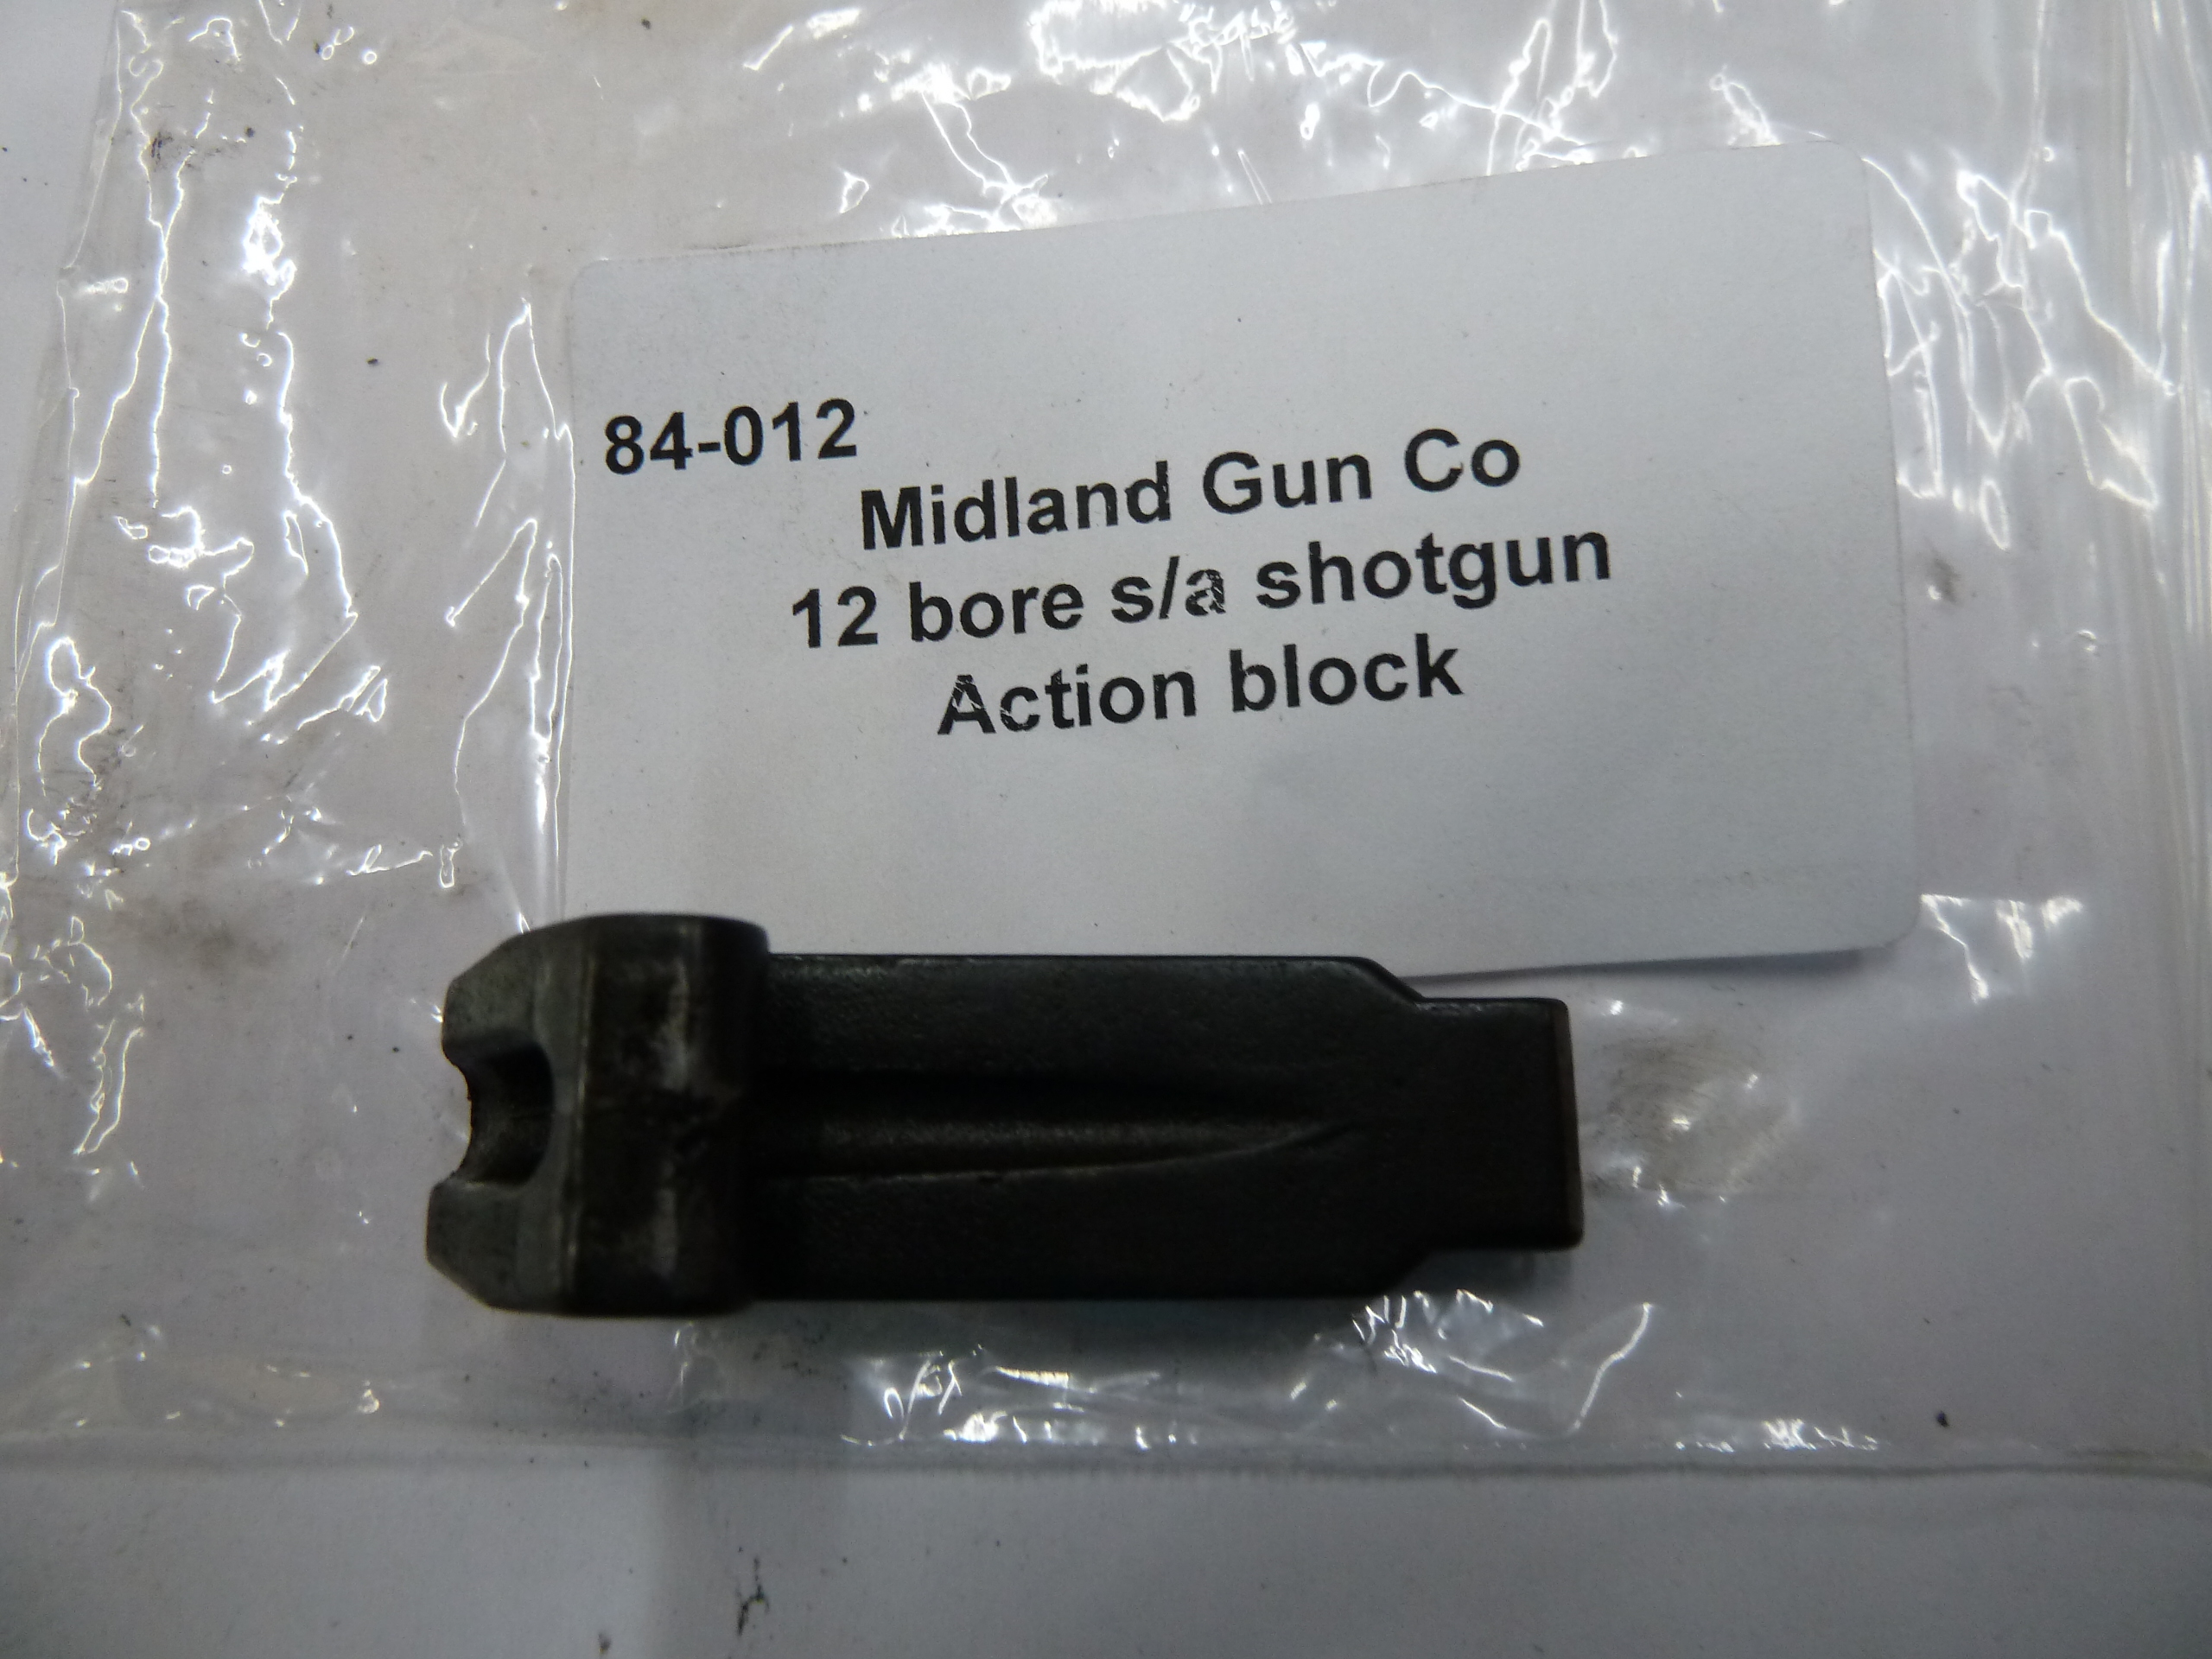 Midland Gun Co action block